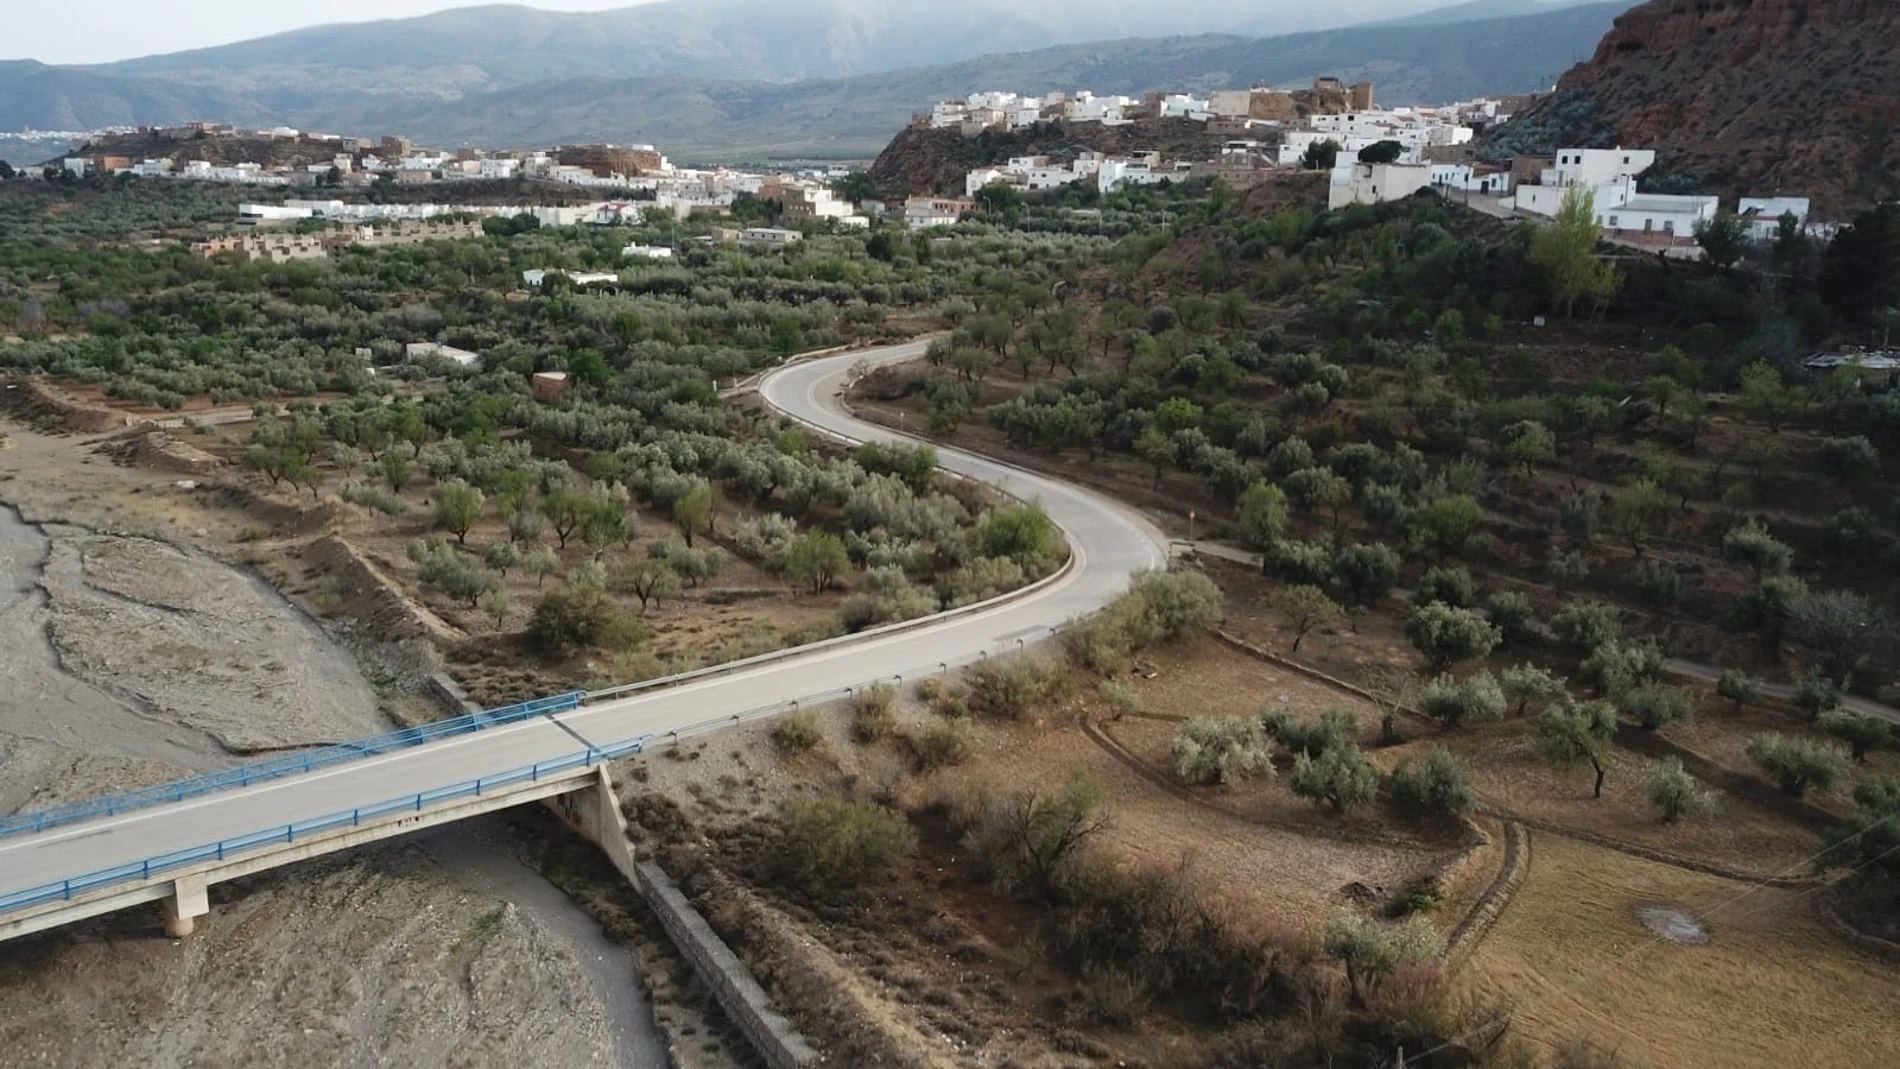 Fiñana pertenece a la provincia de Almería